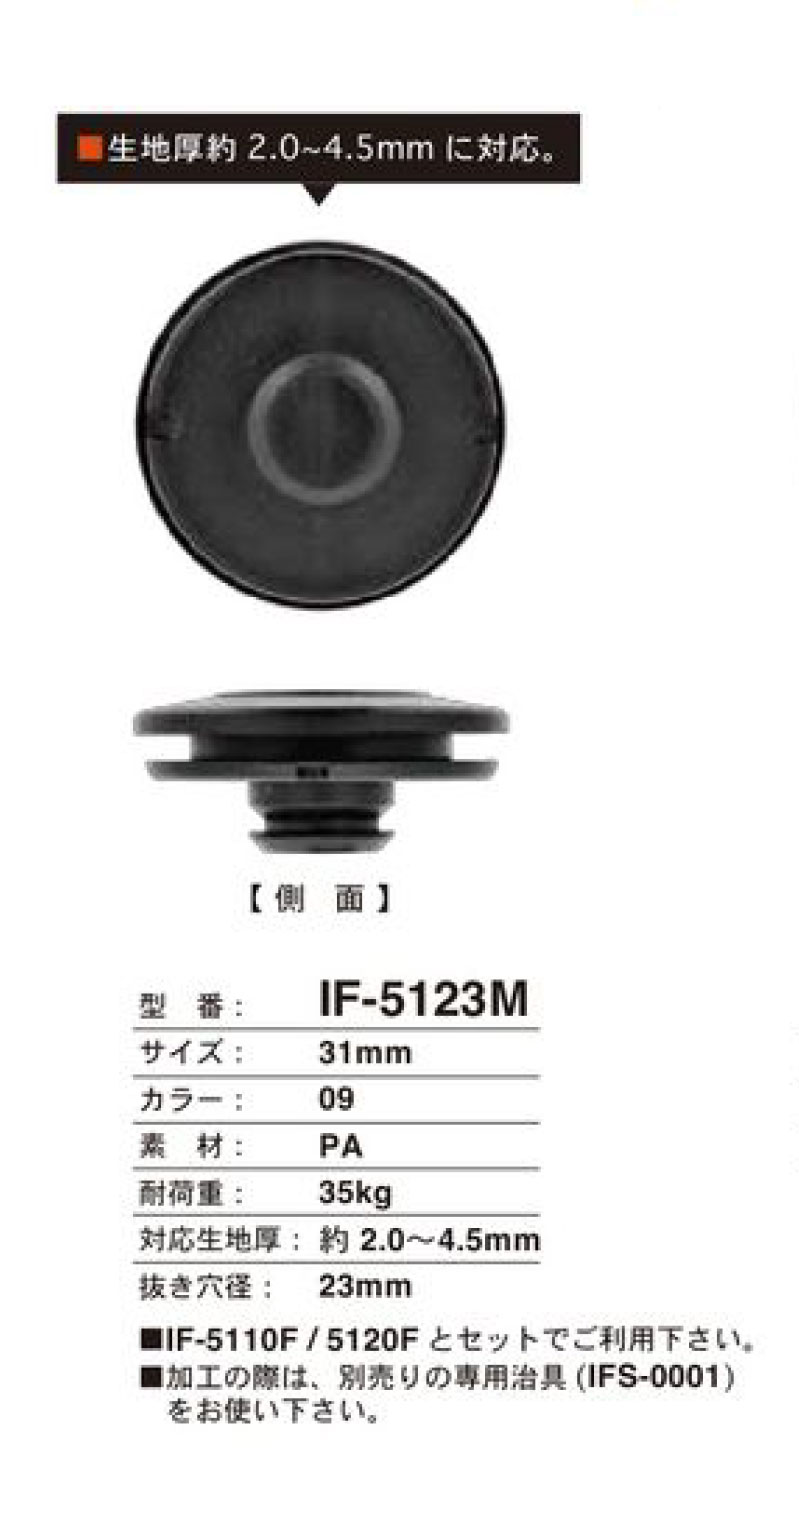 IF-5123F 31 Mm Dicker, Textilkompatibler Druckknopf[Kippschalter] FIDLOCK